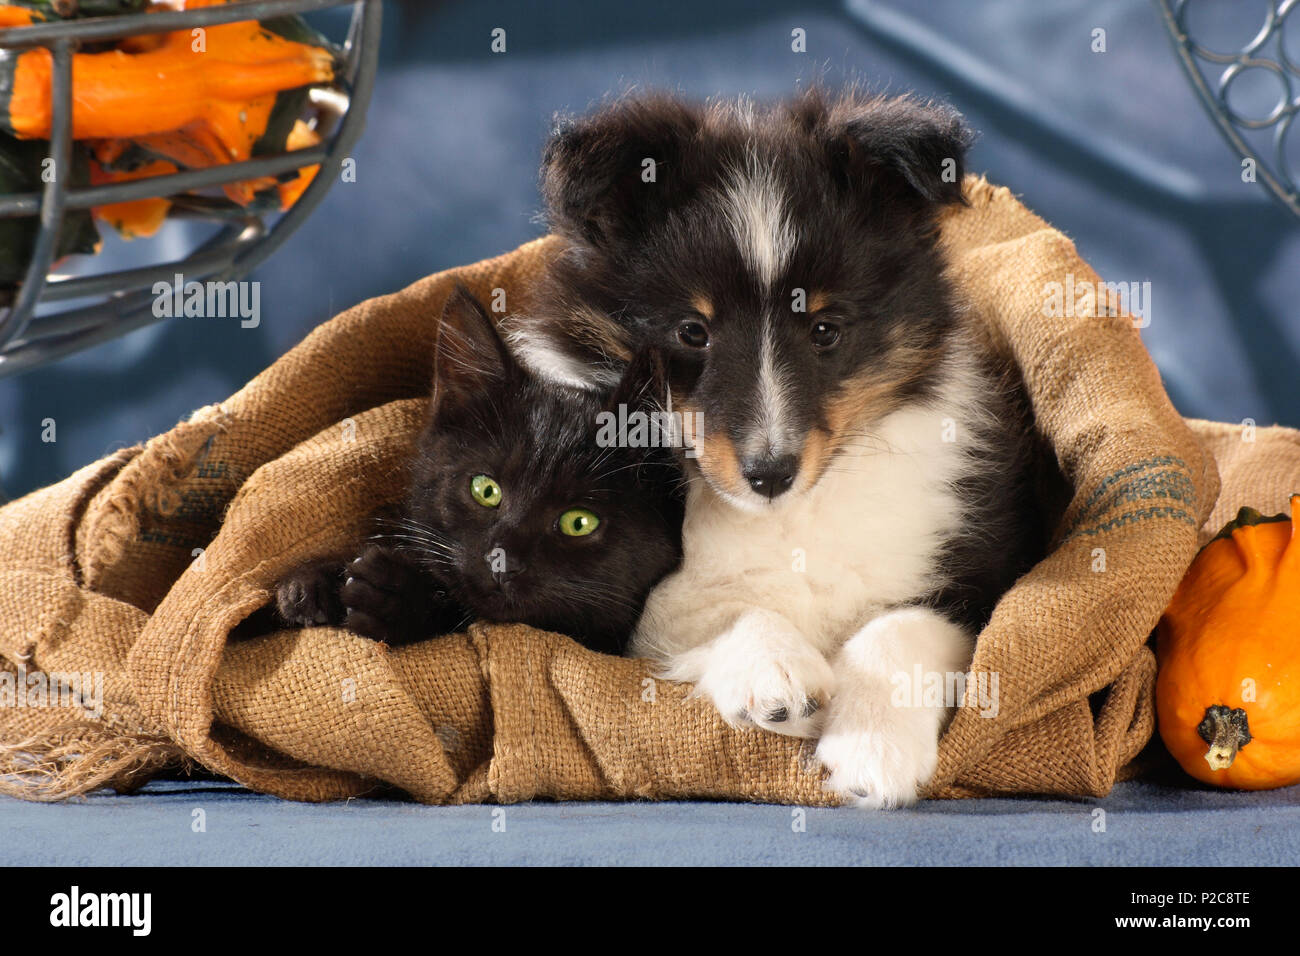 Sheltie Welpe (tricolor) und schwarze Katze nahe zusammen liegen in einem Jute Sack Stockfoto